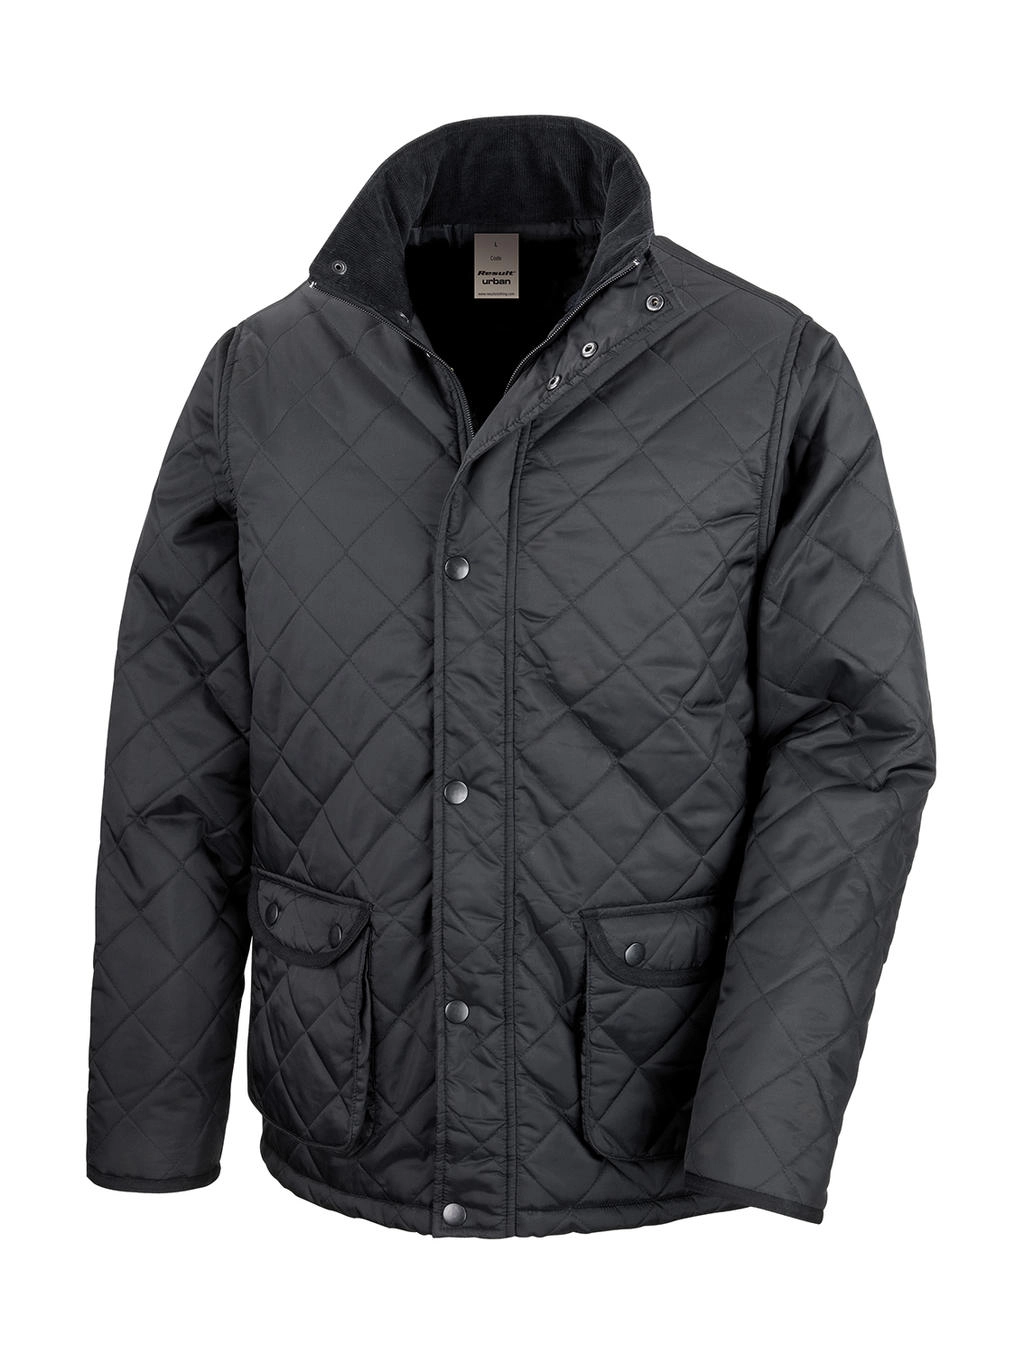 Urban Cheltenham Jacket zum Besticken und Bedrucken in der Farbe Black mit Ihren Logo, Schriftzug oder Motiv.